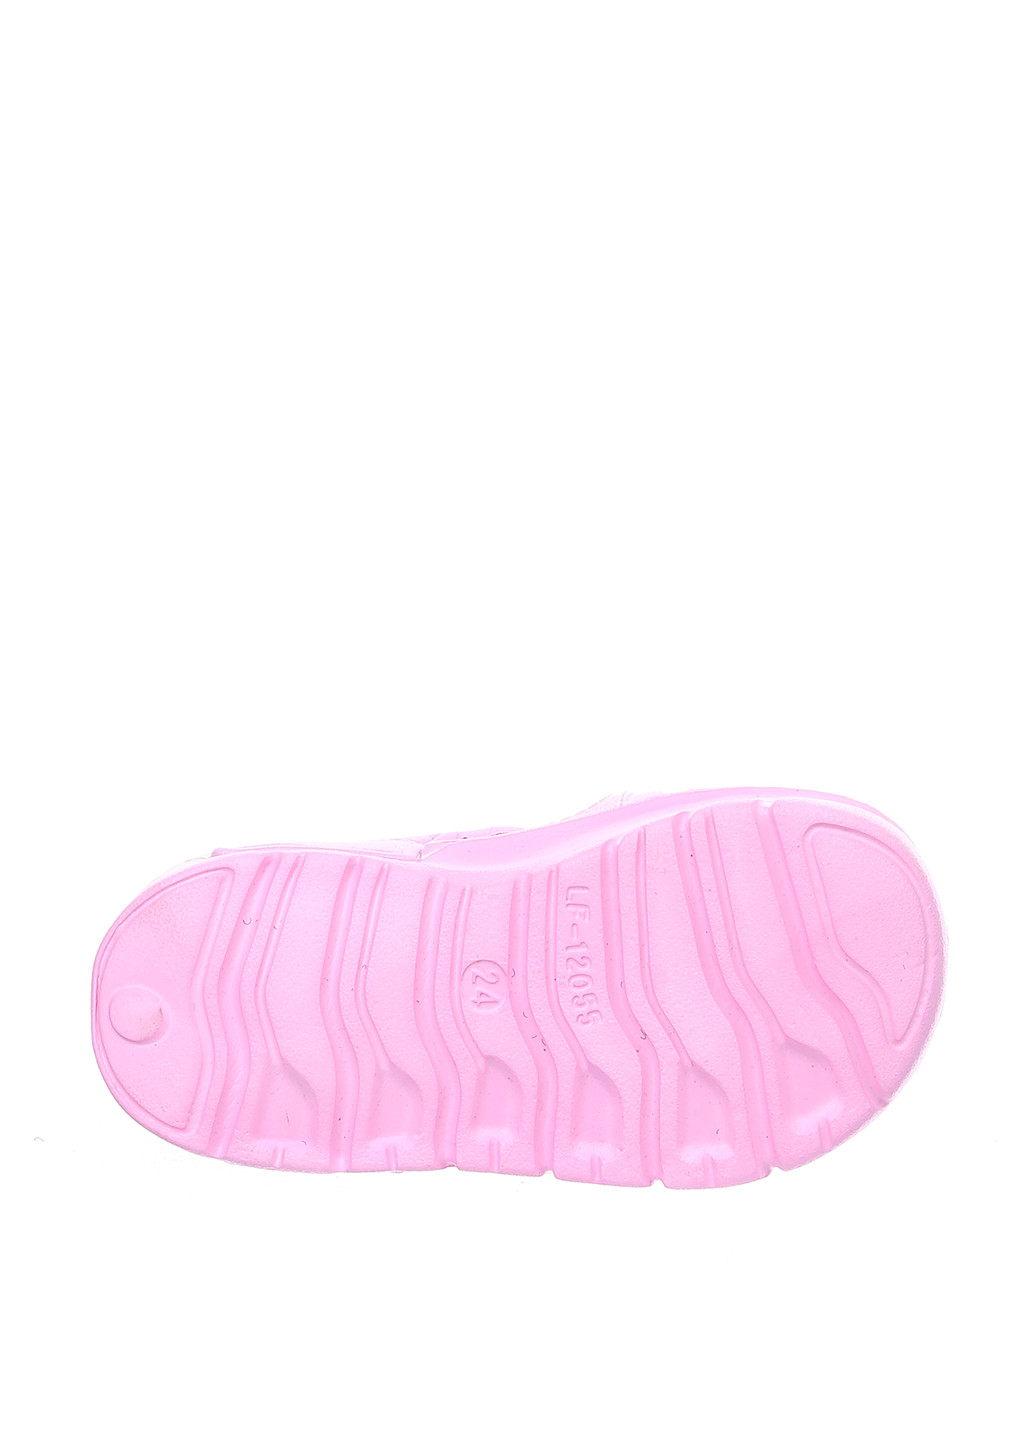 Розовые пляжные сандалии Шалунишка на липучке